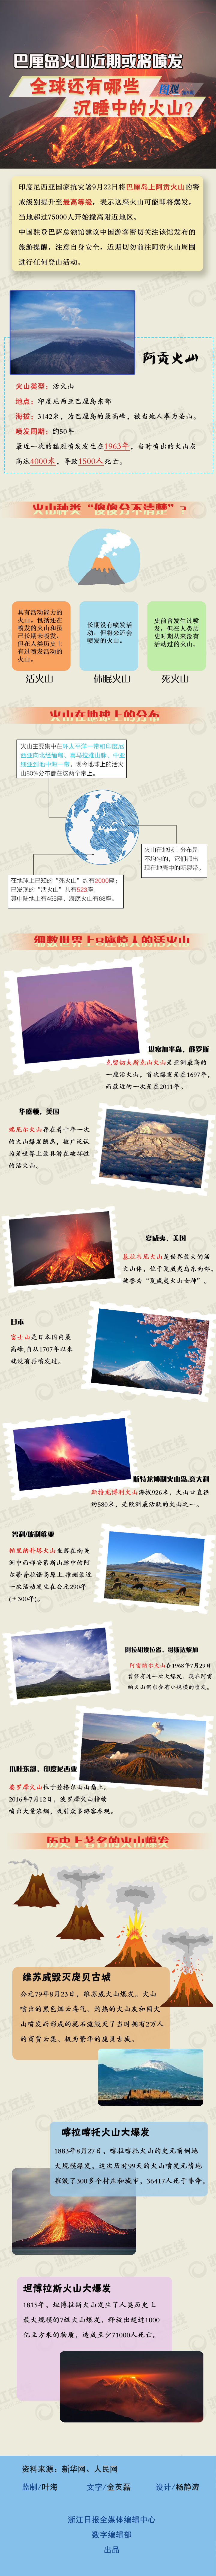 火山 图观第9期4.jpg